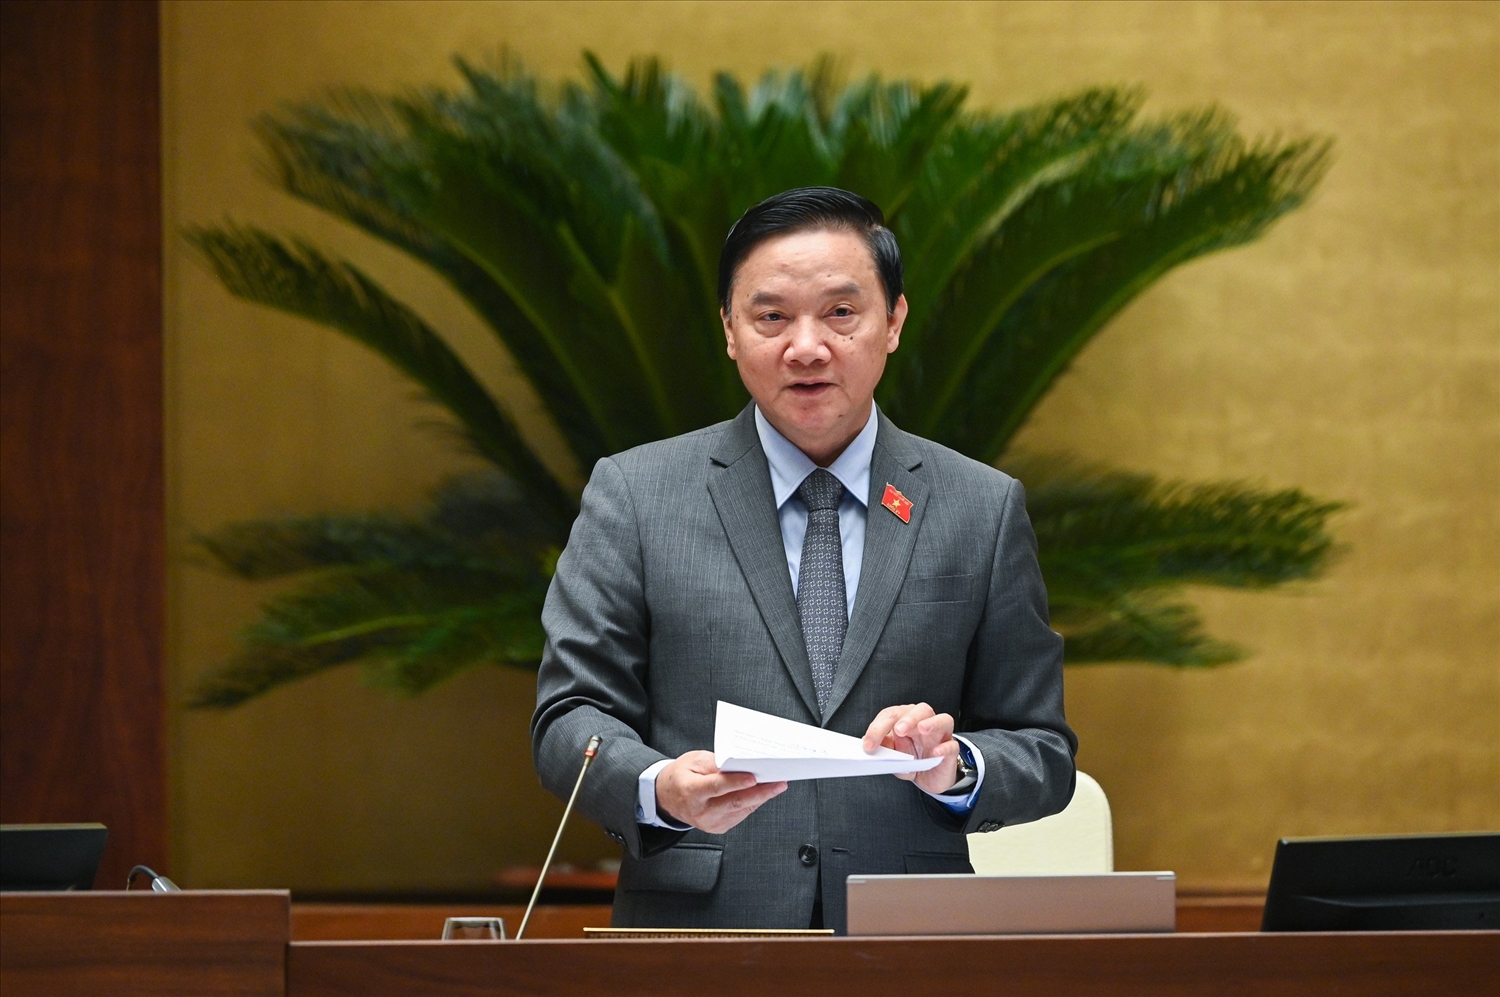 Phó Chủ tịch Quốc hội Nguyễn Khắc Định điều hành phiên họp